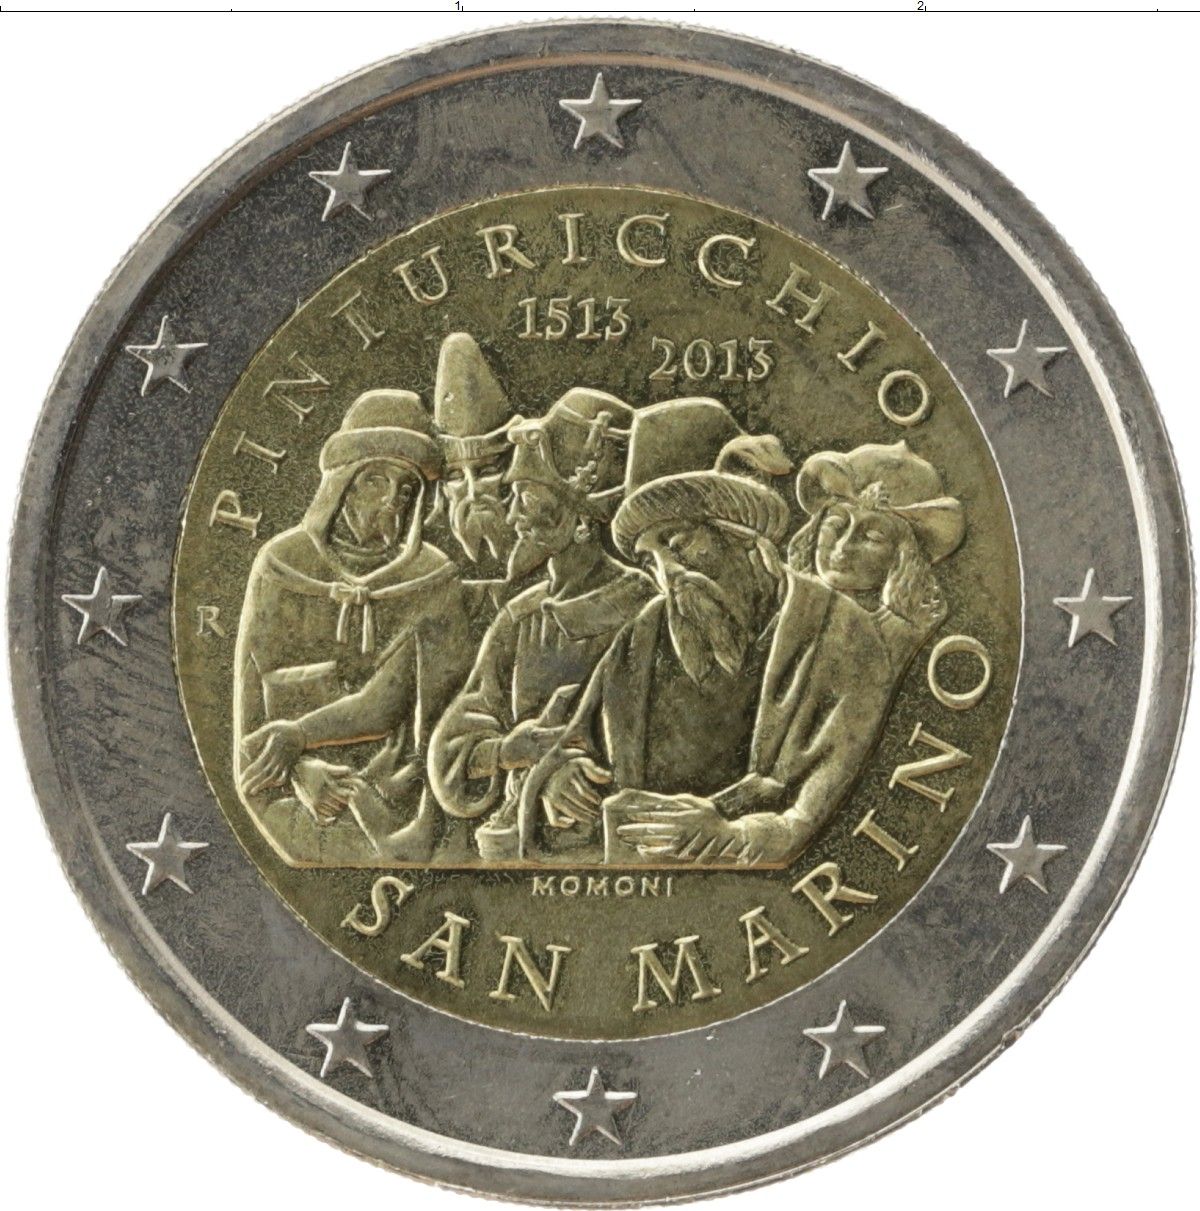 Сан марино 2. Сан Марино 2 евро 2013 Пинтуриккьо. 2 Евро Сан Марино. Монеты евро Сан-Марино. Сан-Марино монета 1 евро.